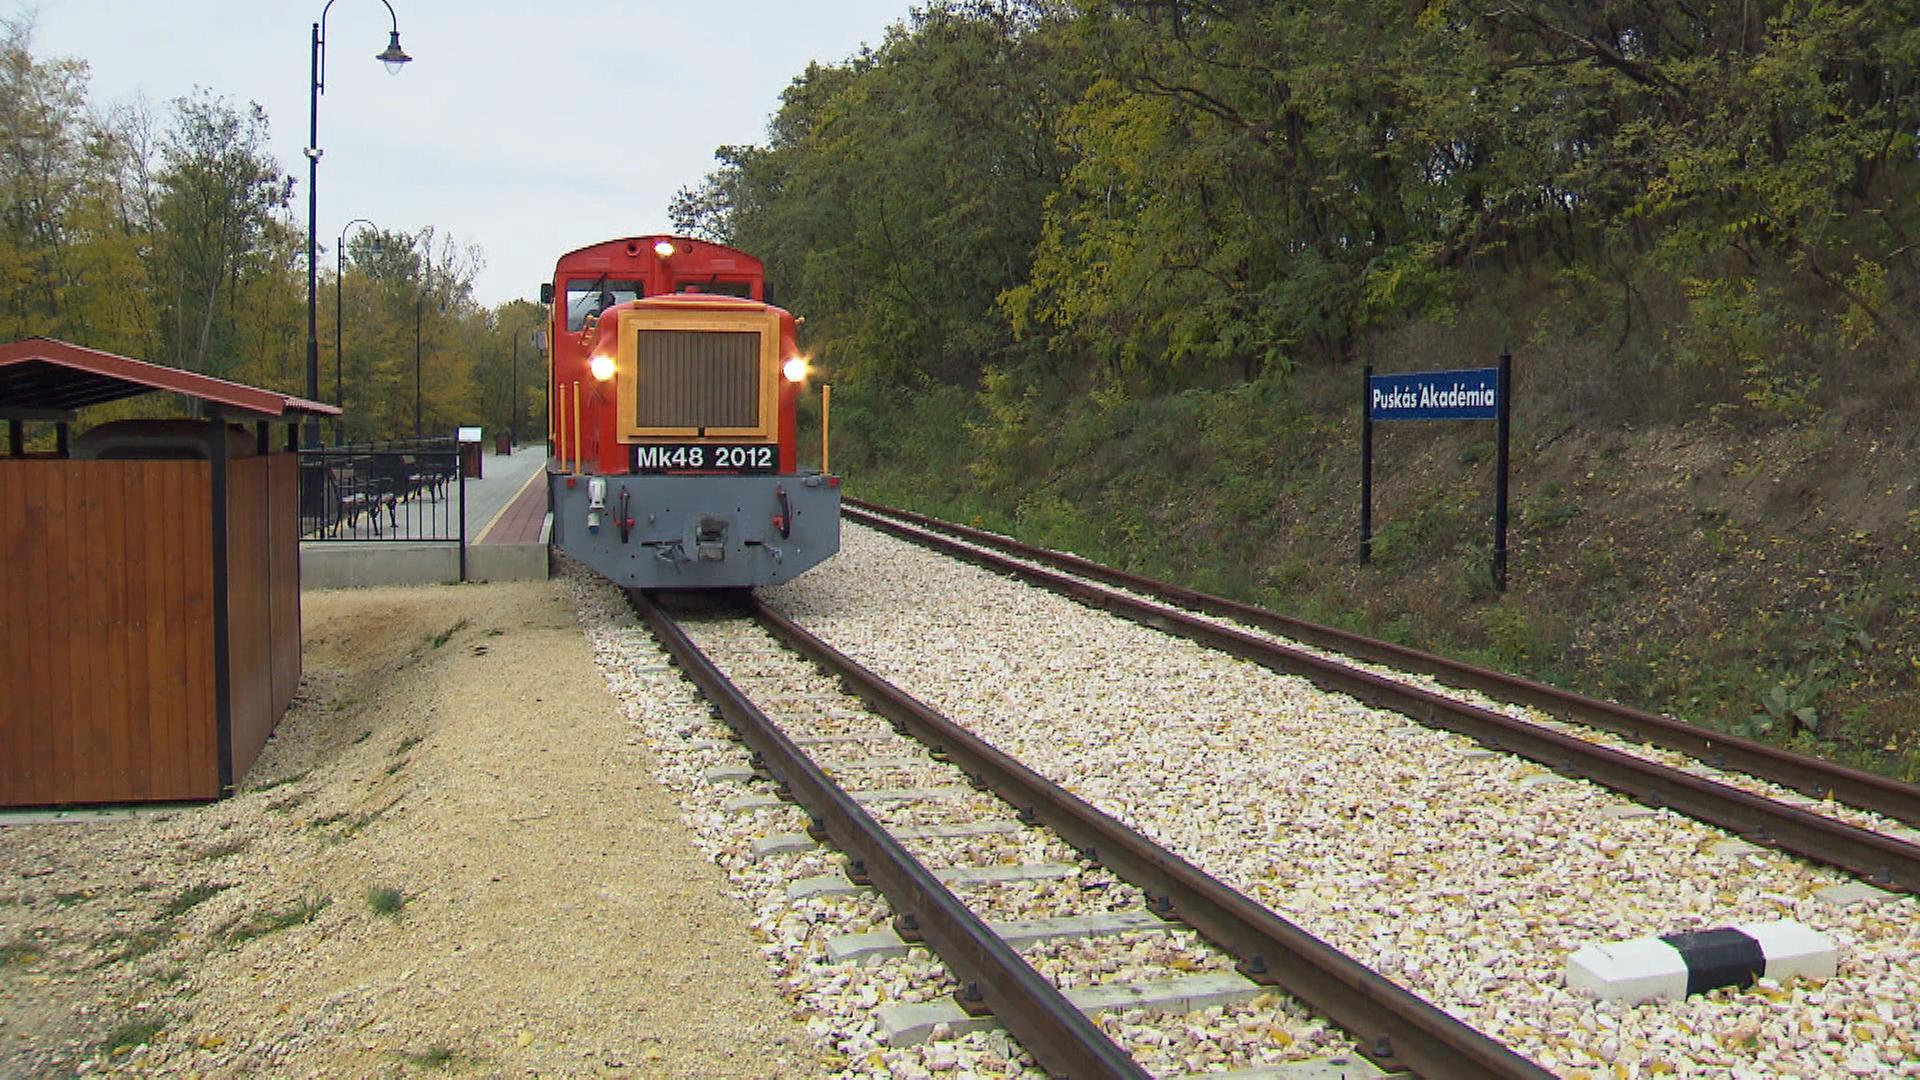 Eine rote Lok fährt in die Station Puskás-Akademie im ungarischen Felcsú ein